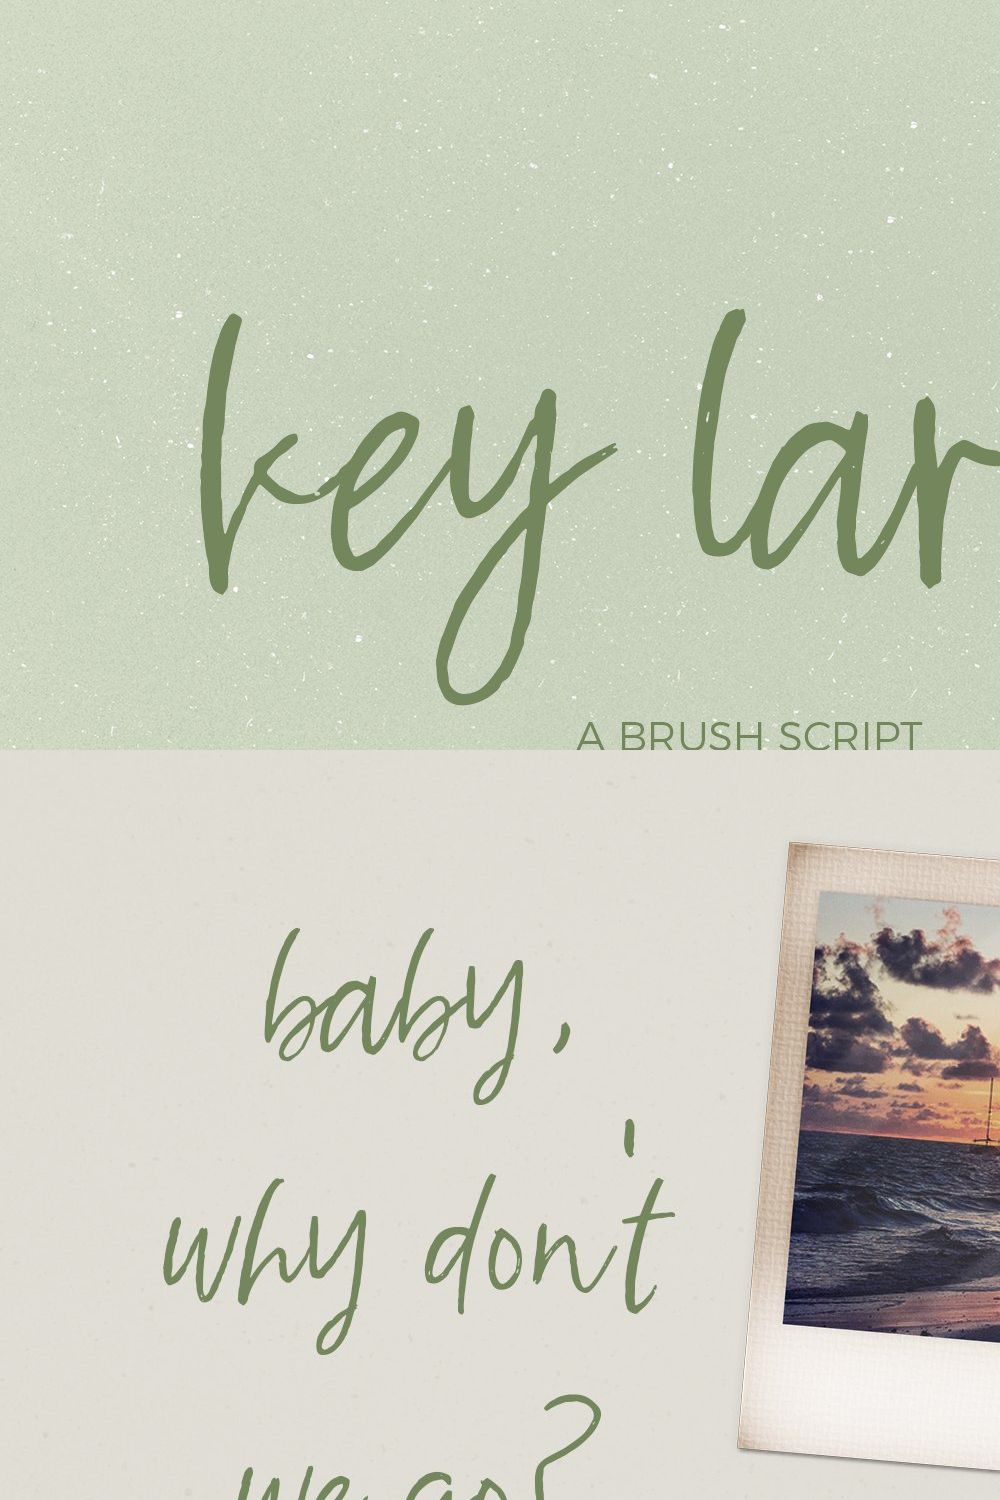 Key Largo Brush Script pinterest preview image.